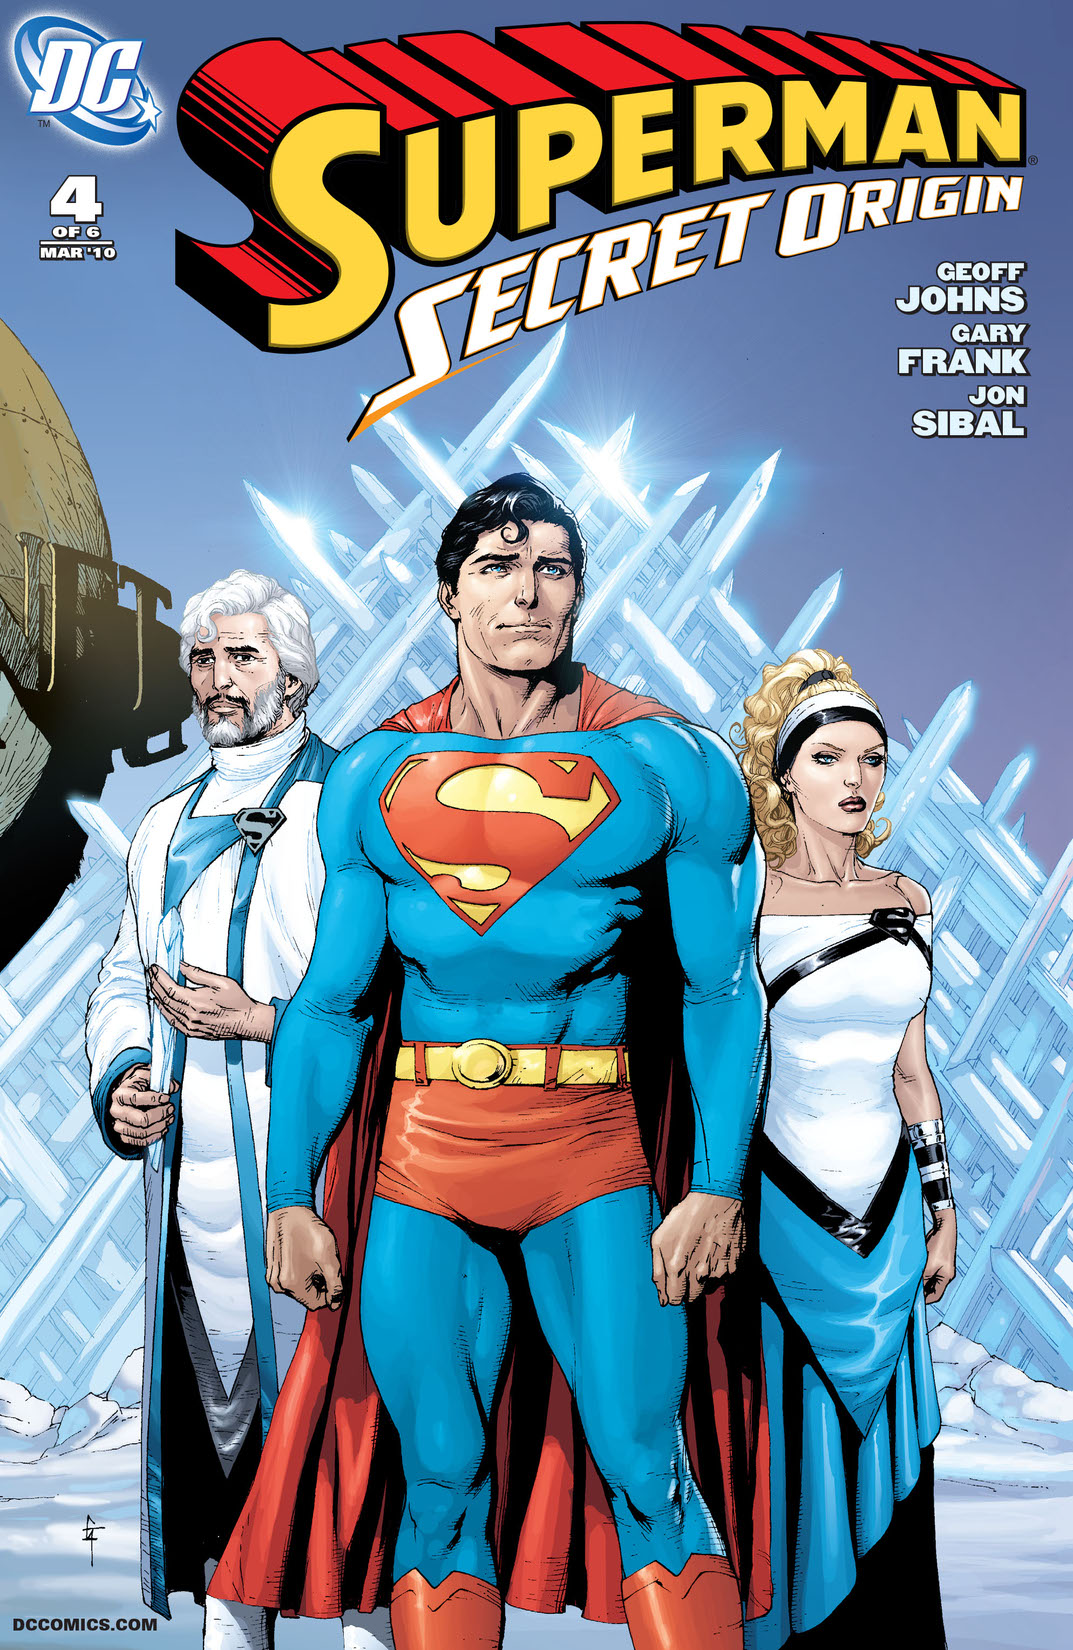 Superman: Secret Origin #4 preview images